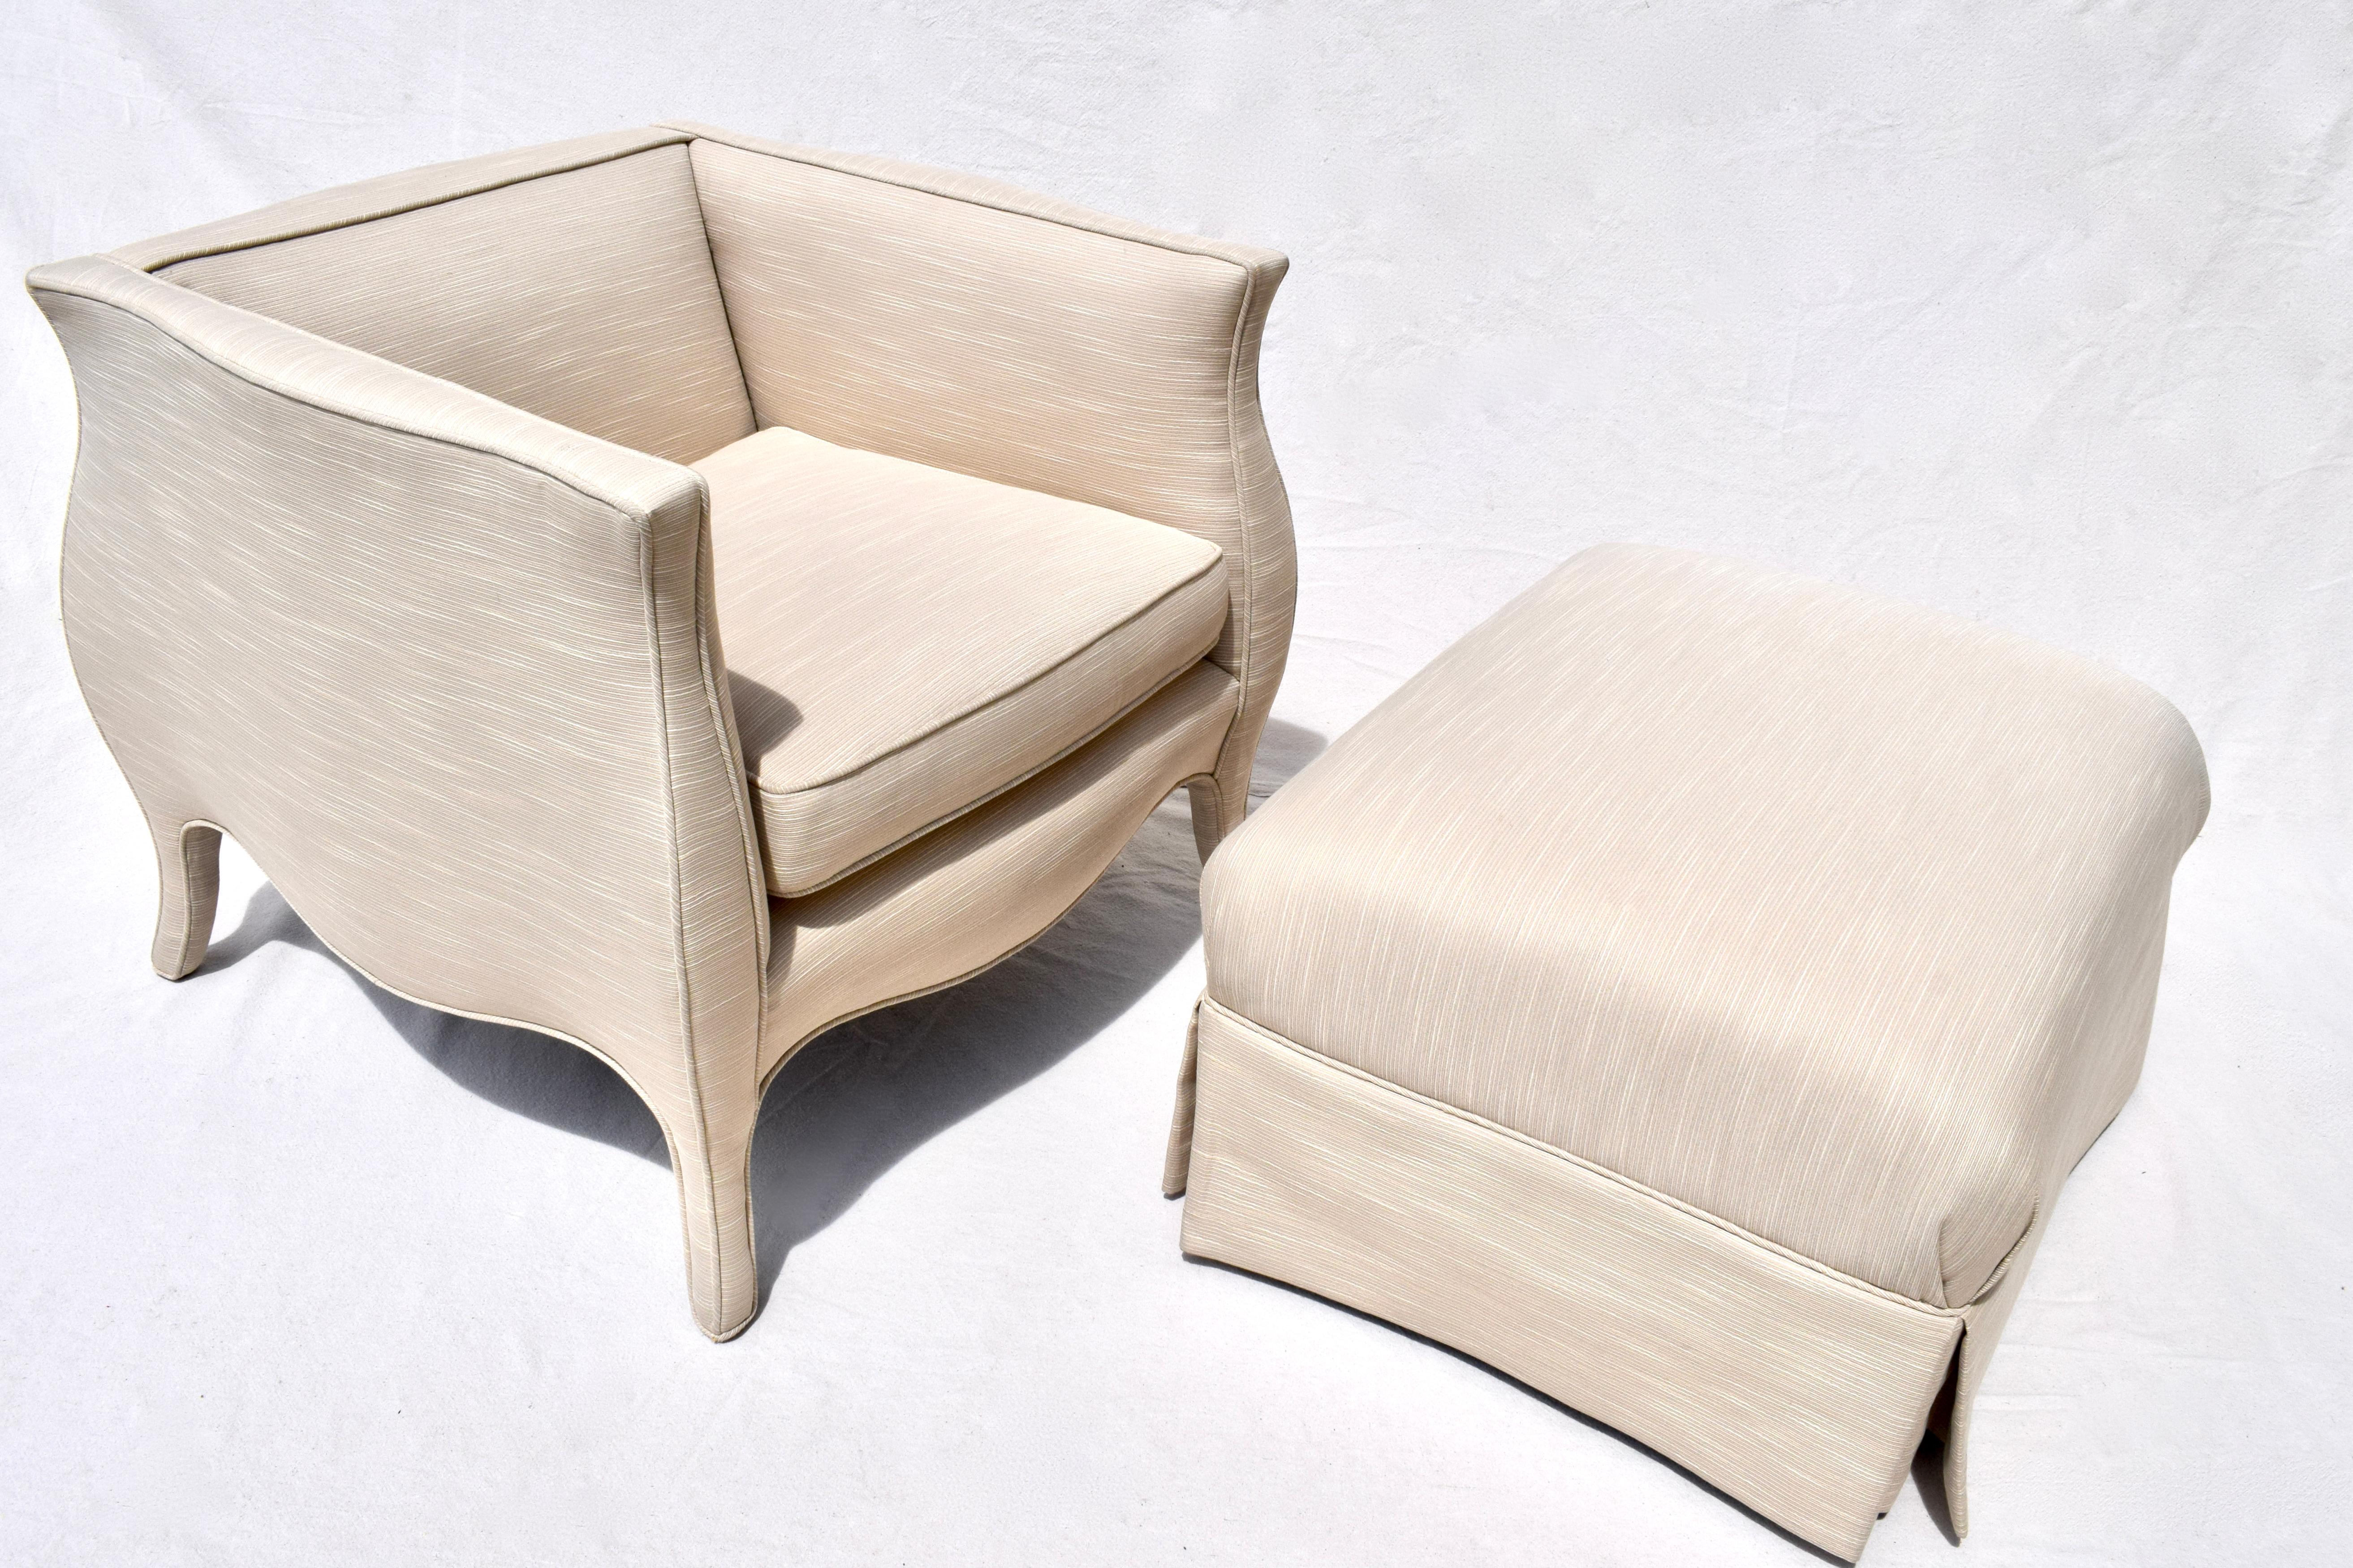 Ein ungewöhnliches Set aus Stuhl und Ottomane von Richard Himmel aus den 1970er Jahren in hervorragendem Vintage-Zustand, als wäre es in der Zeit eingefroren. Neuere Polsterung in selten benutztem Zustand.
Abmessungen der Ottomane: 28